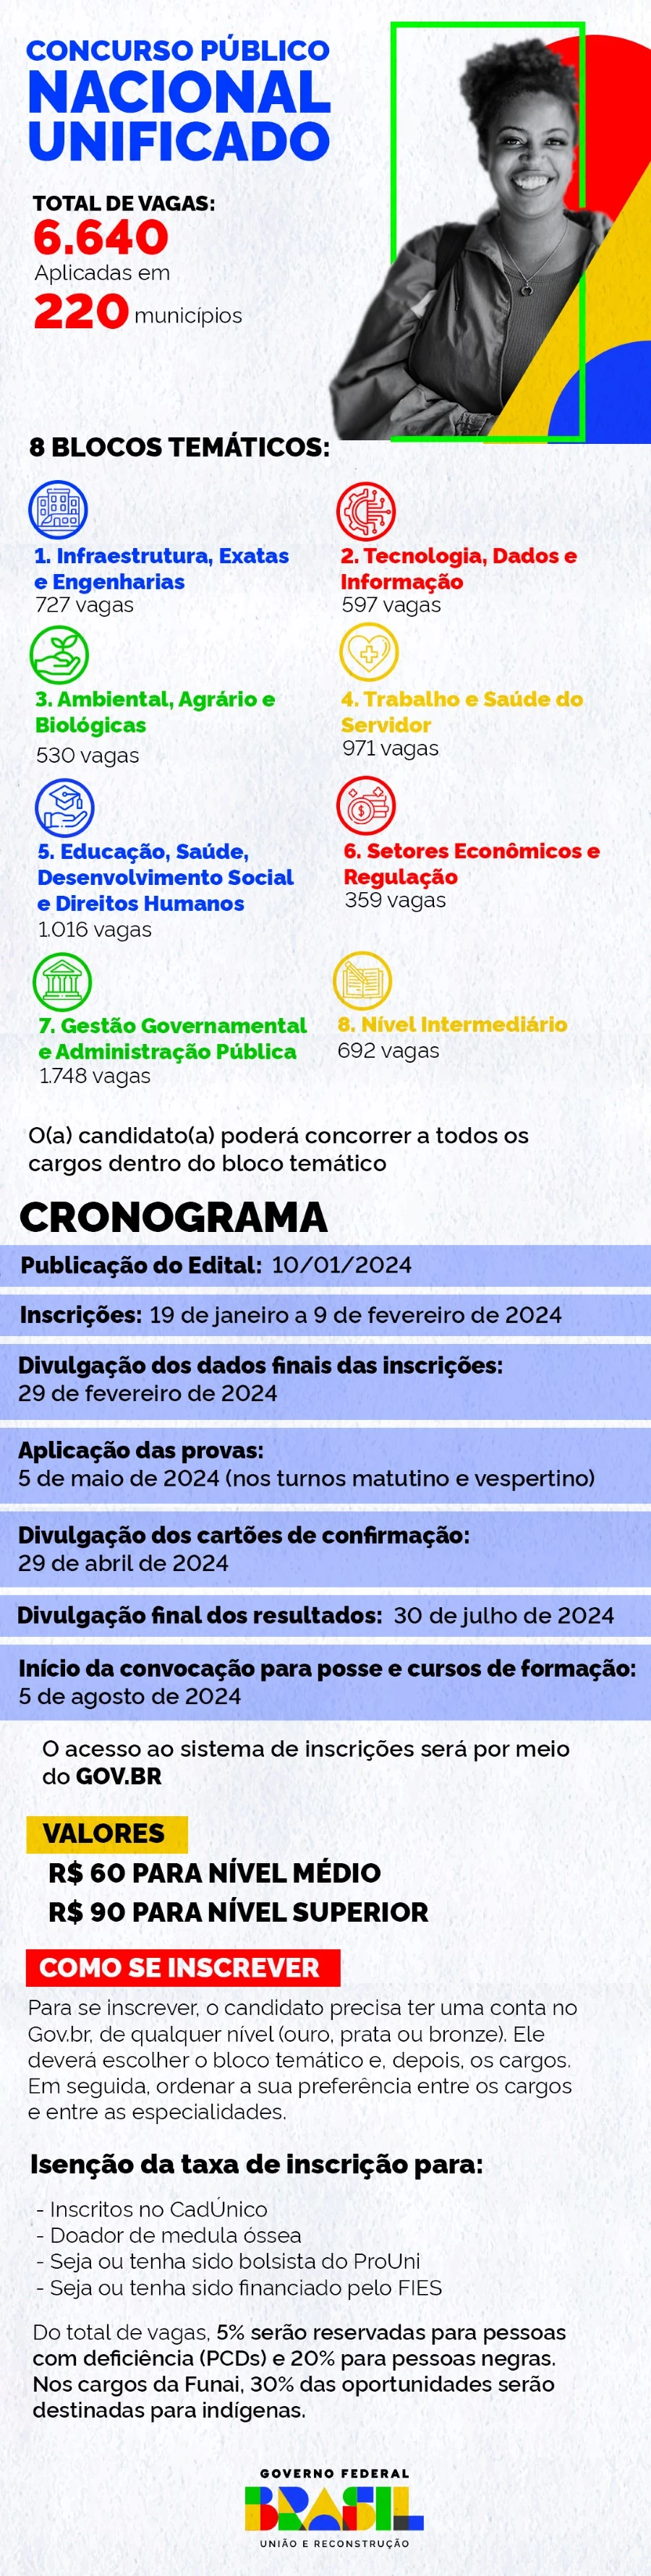 Infográfico 1 - Principais detalhes sobre o Concurso Público Nacional Unificado (CPNU)